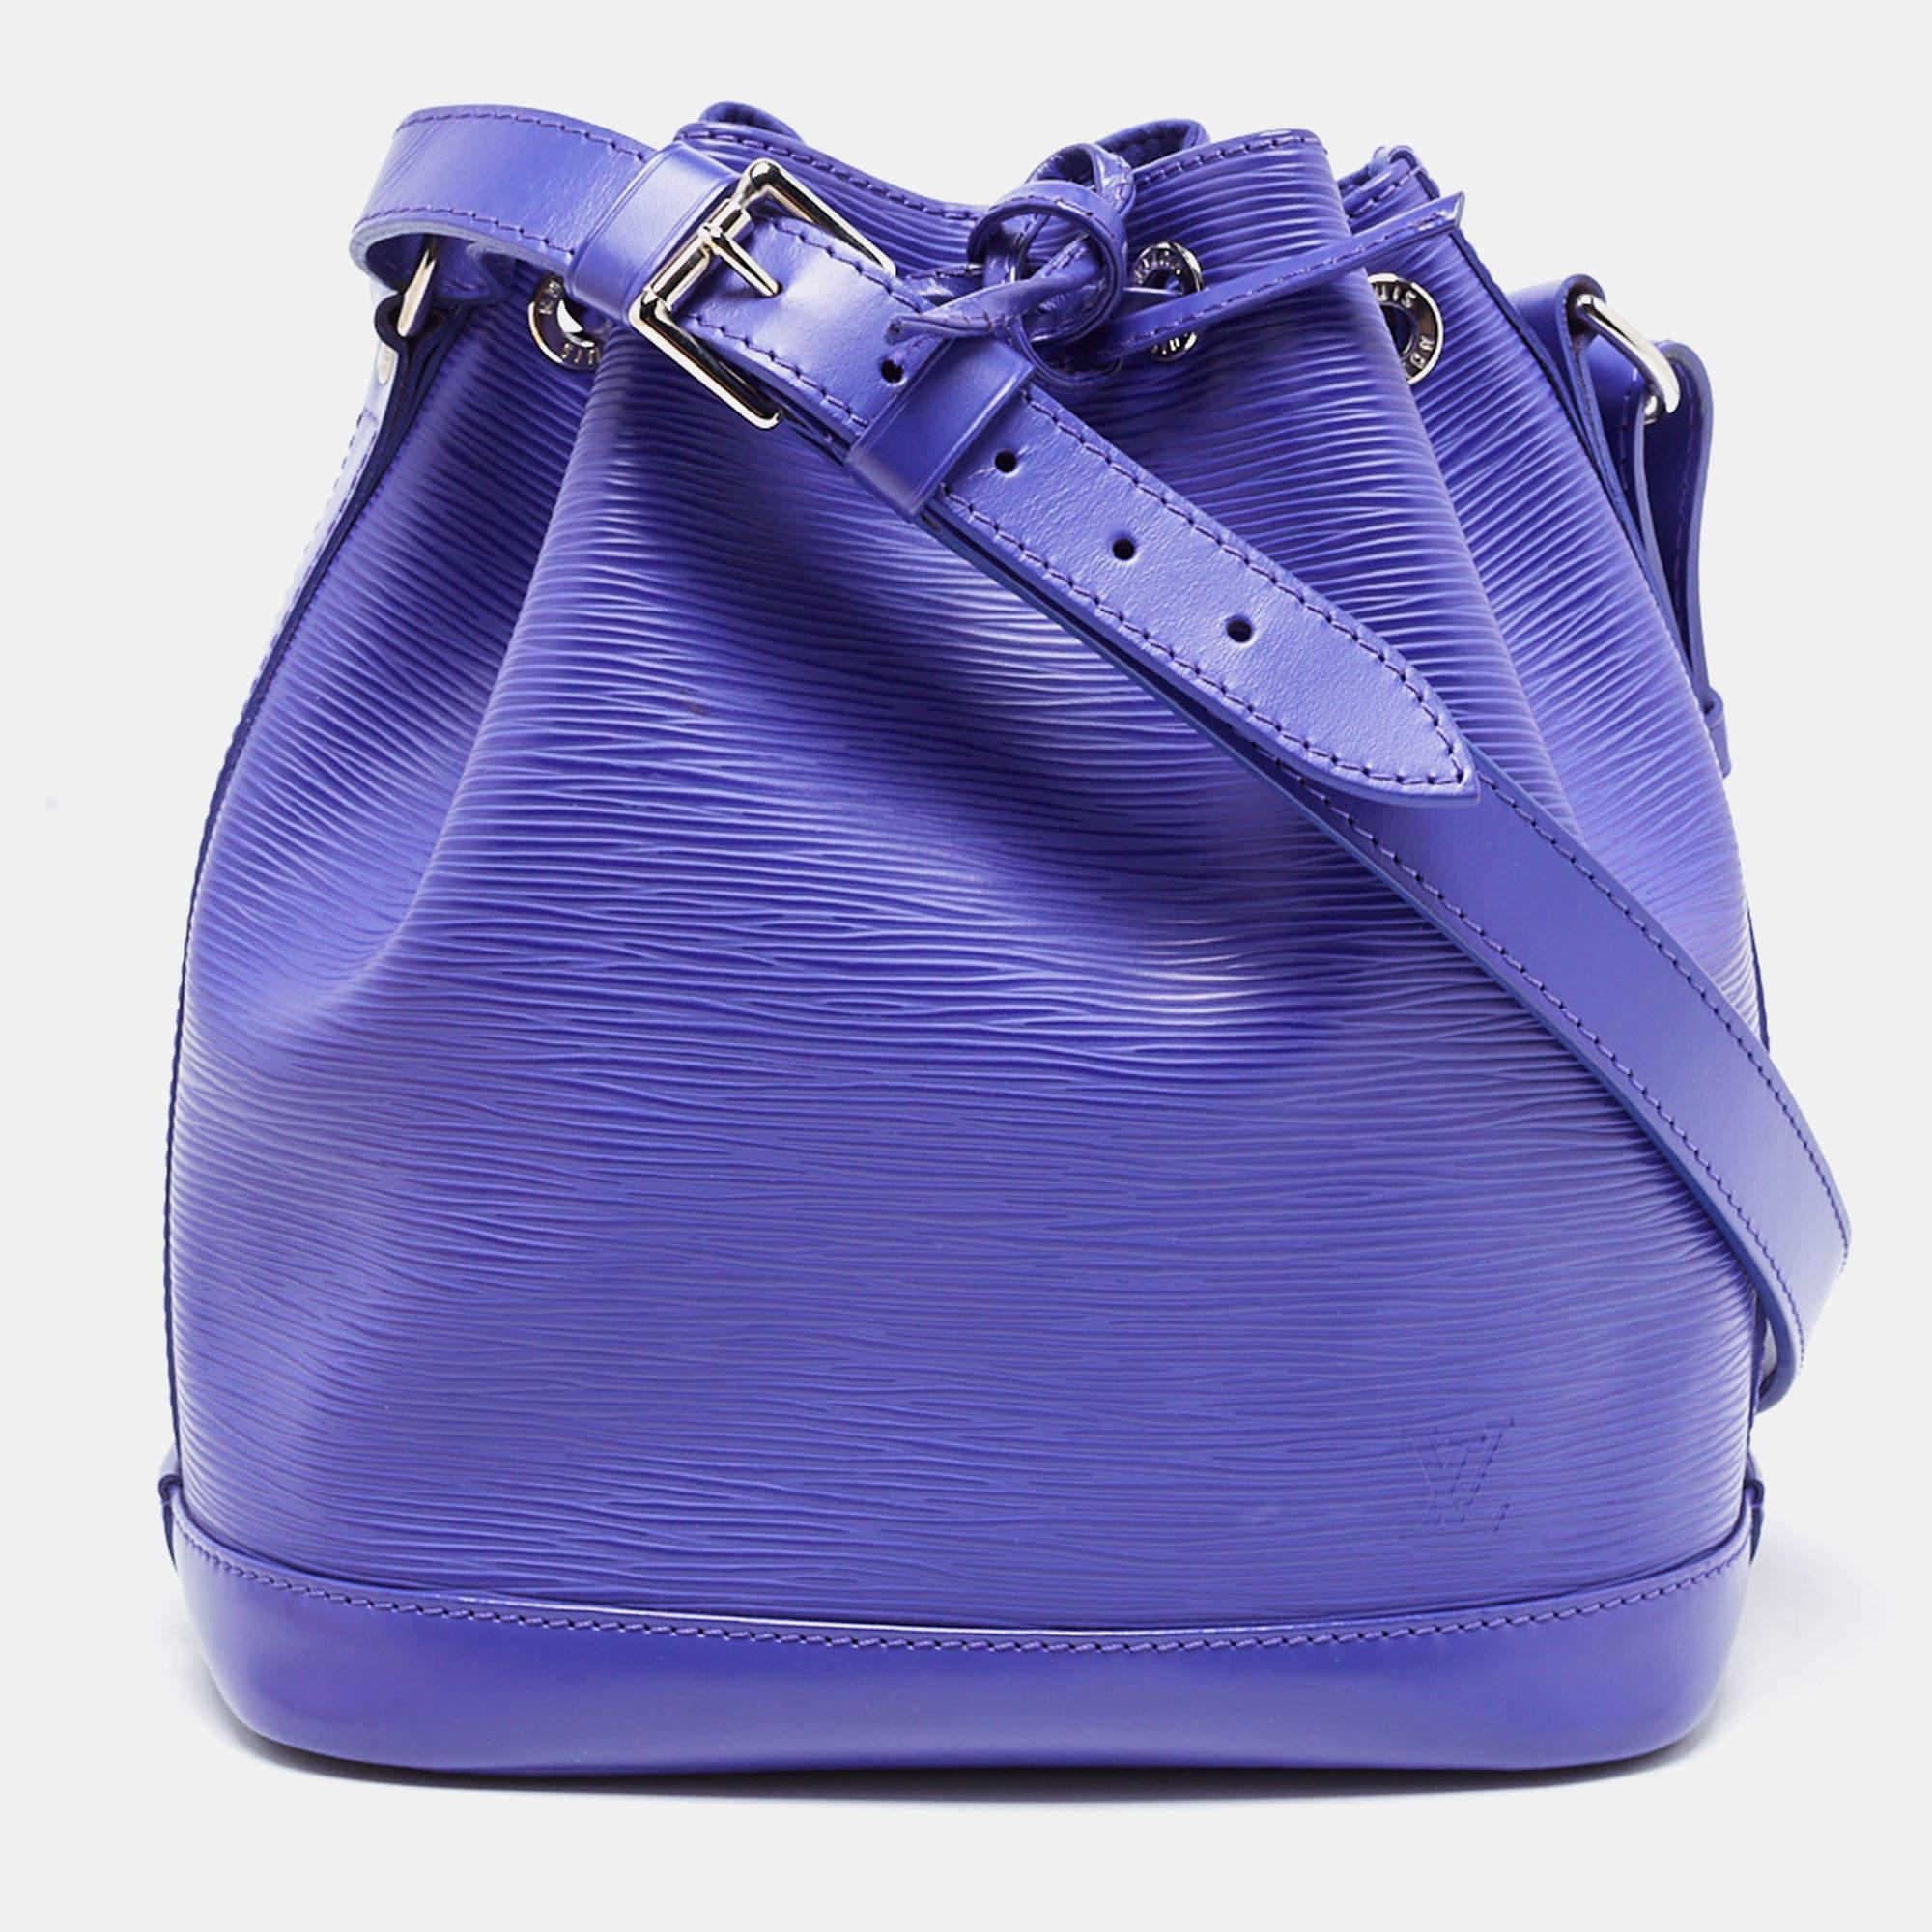 Louis Vuitton Figue Epi Leather Neonoe Bag For Sale 9